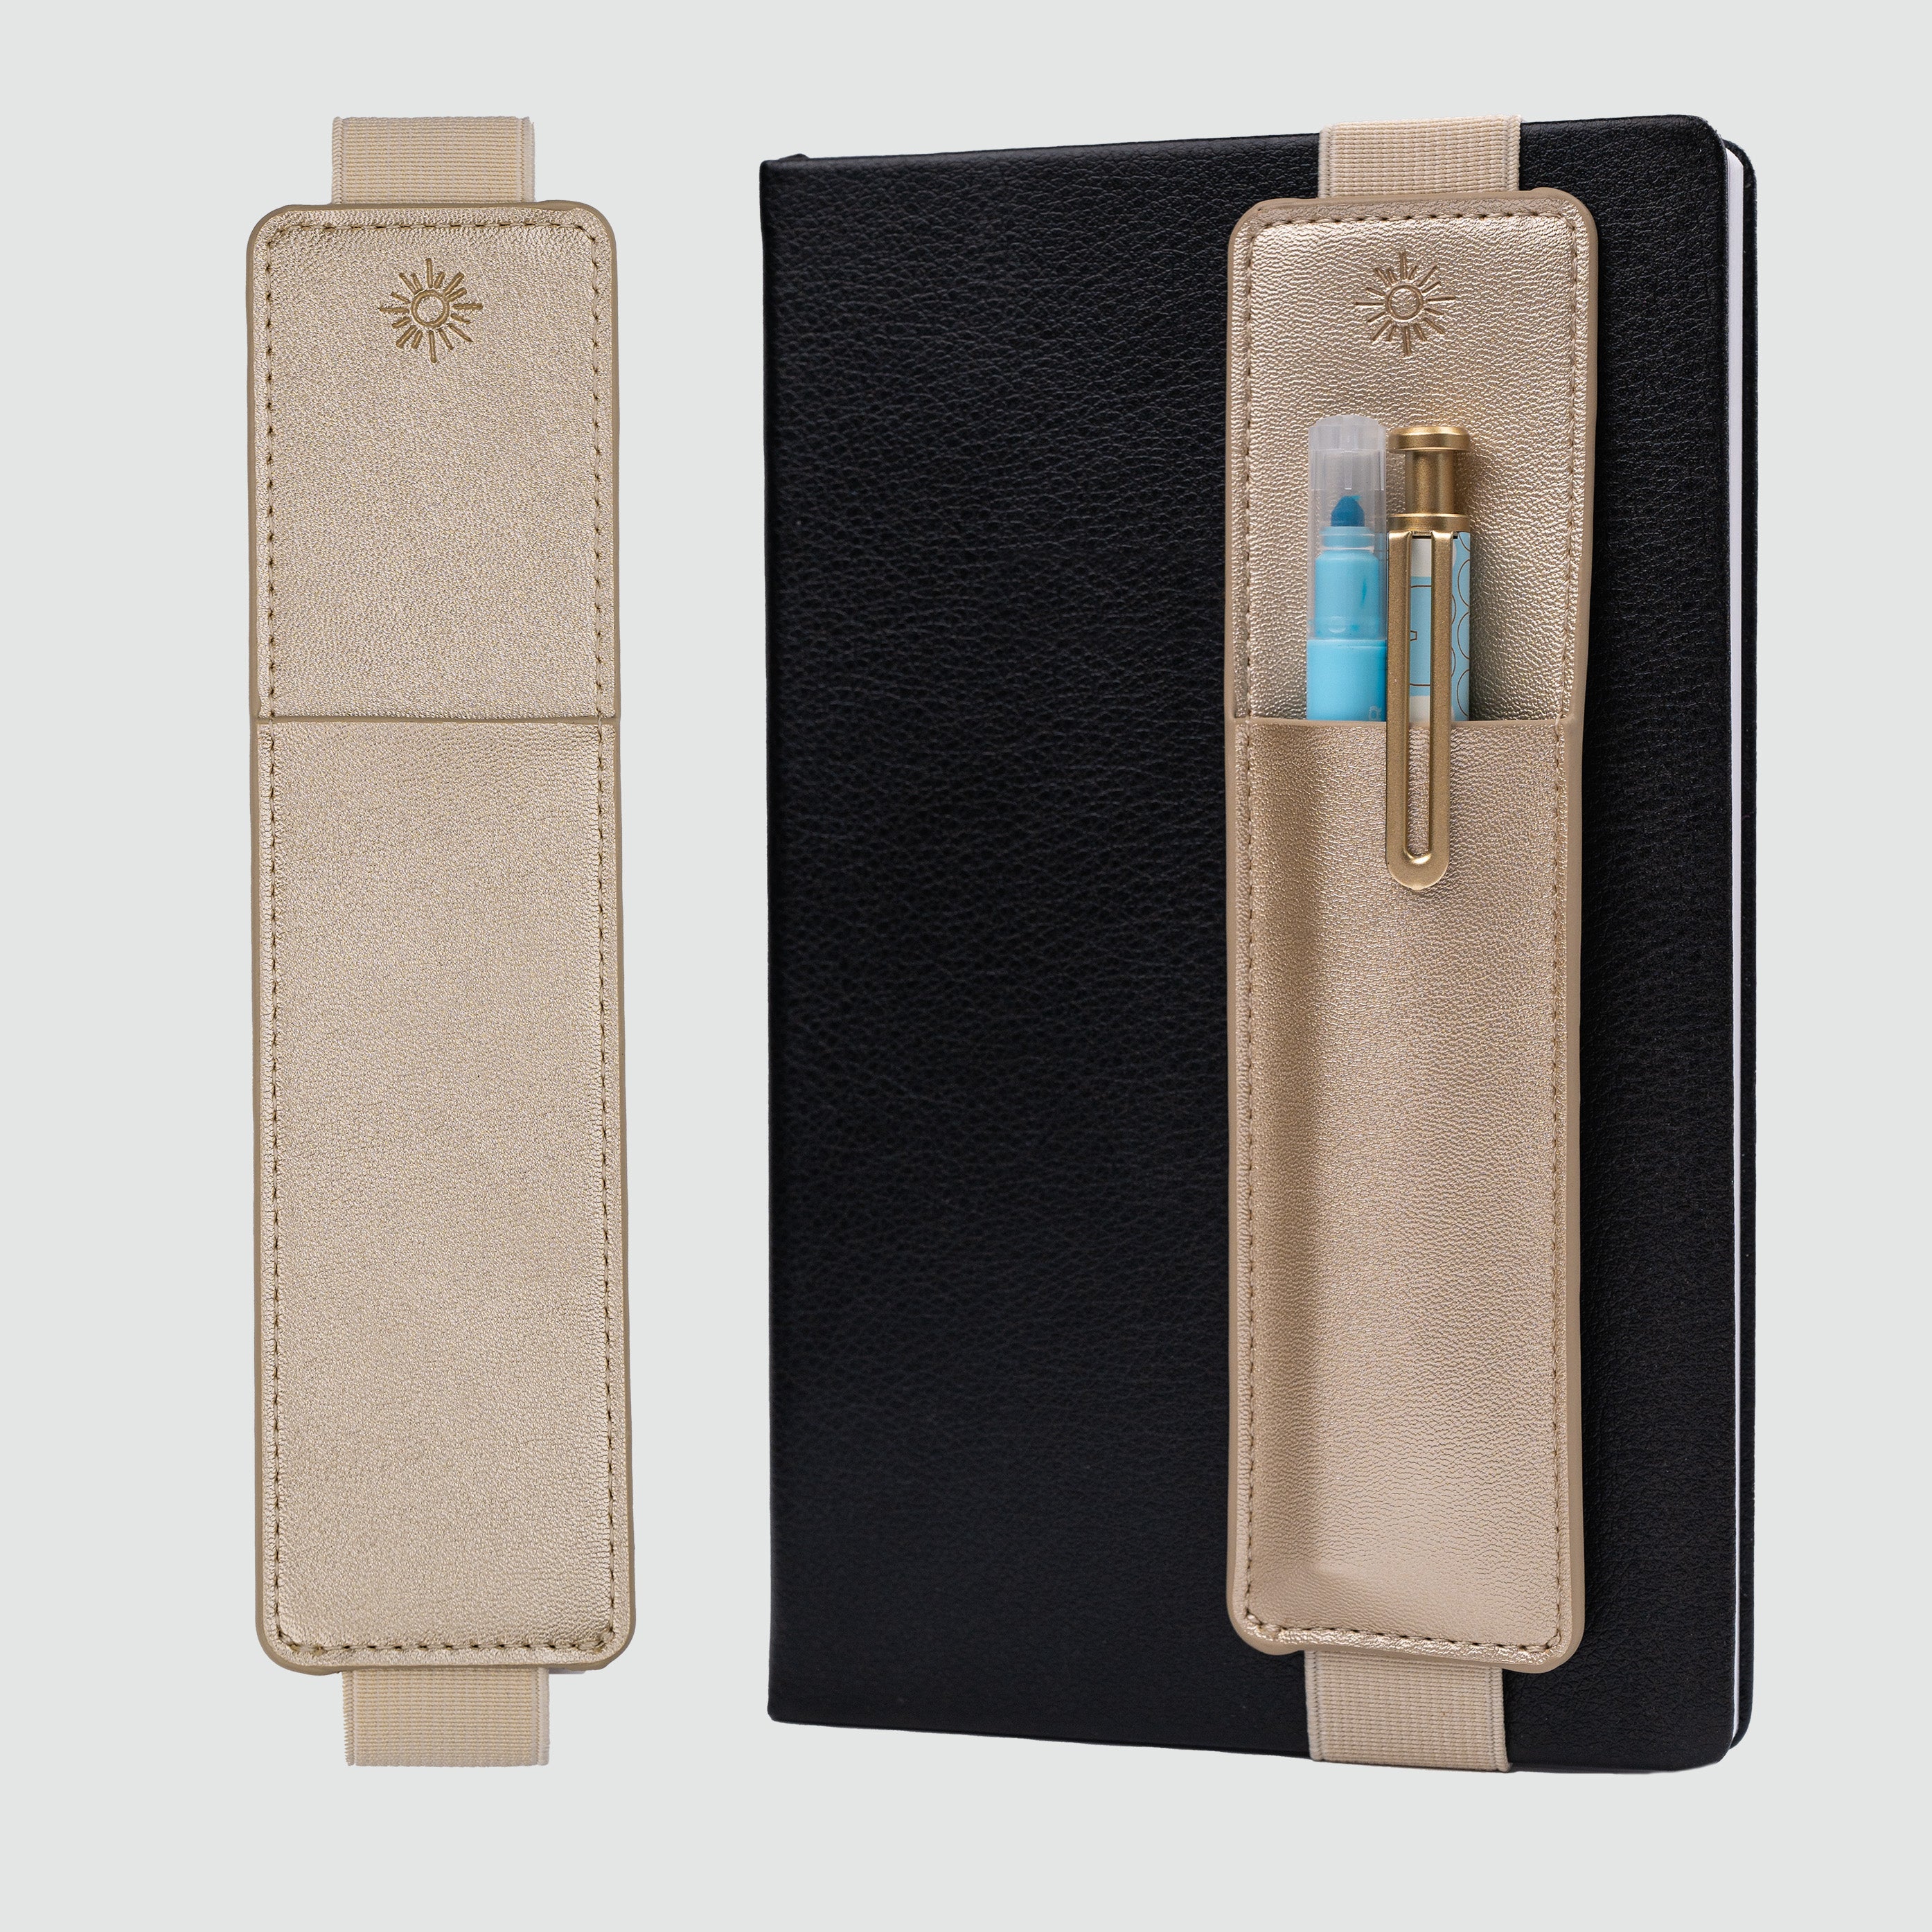 KPALAG Bi-Color (beige/ light blue) Pencil Case Pen Pouch/Organizer NEW